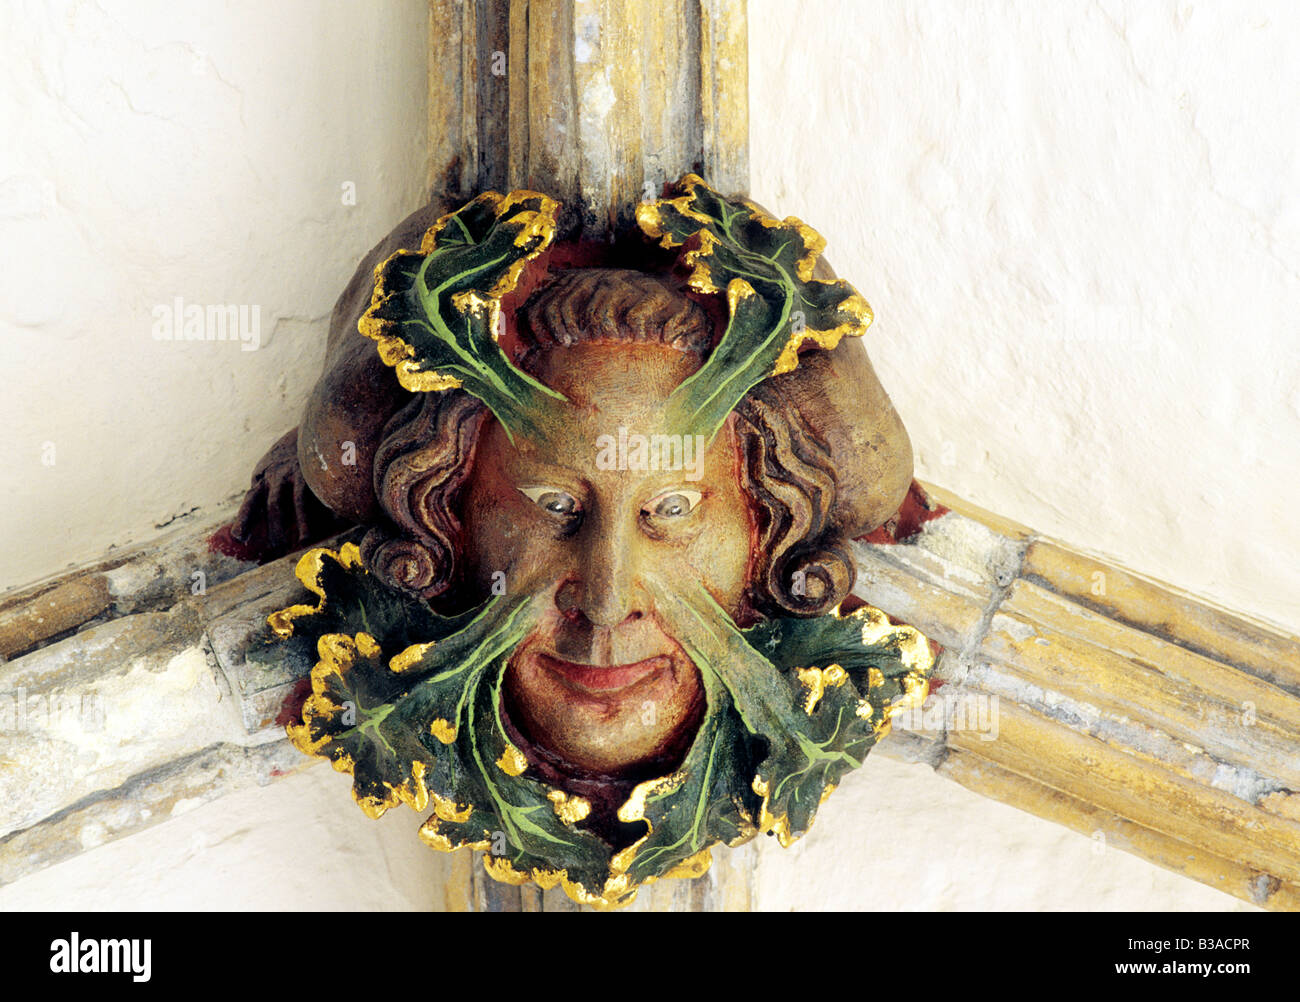 L'homme vert Cloître de la cathédrale médiévale mythique Patron de pavillon français figure créature homme sauvage de la sculpture sur pierre Norfolk Angleterre Banque D'Images